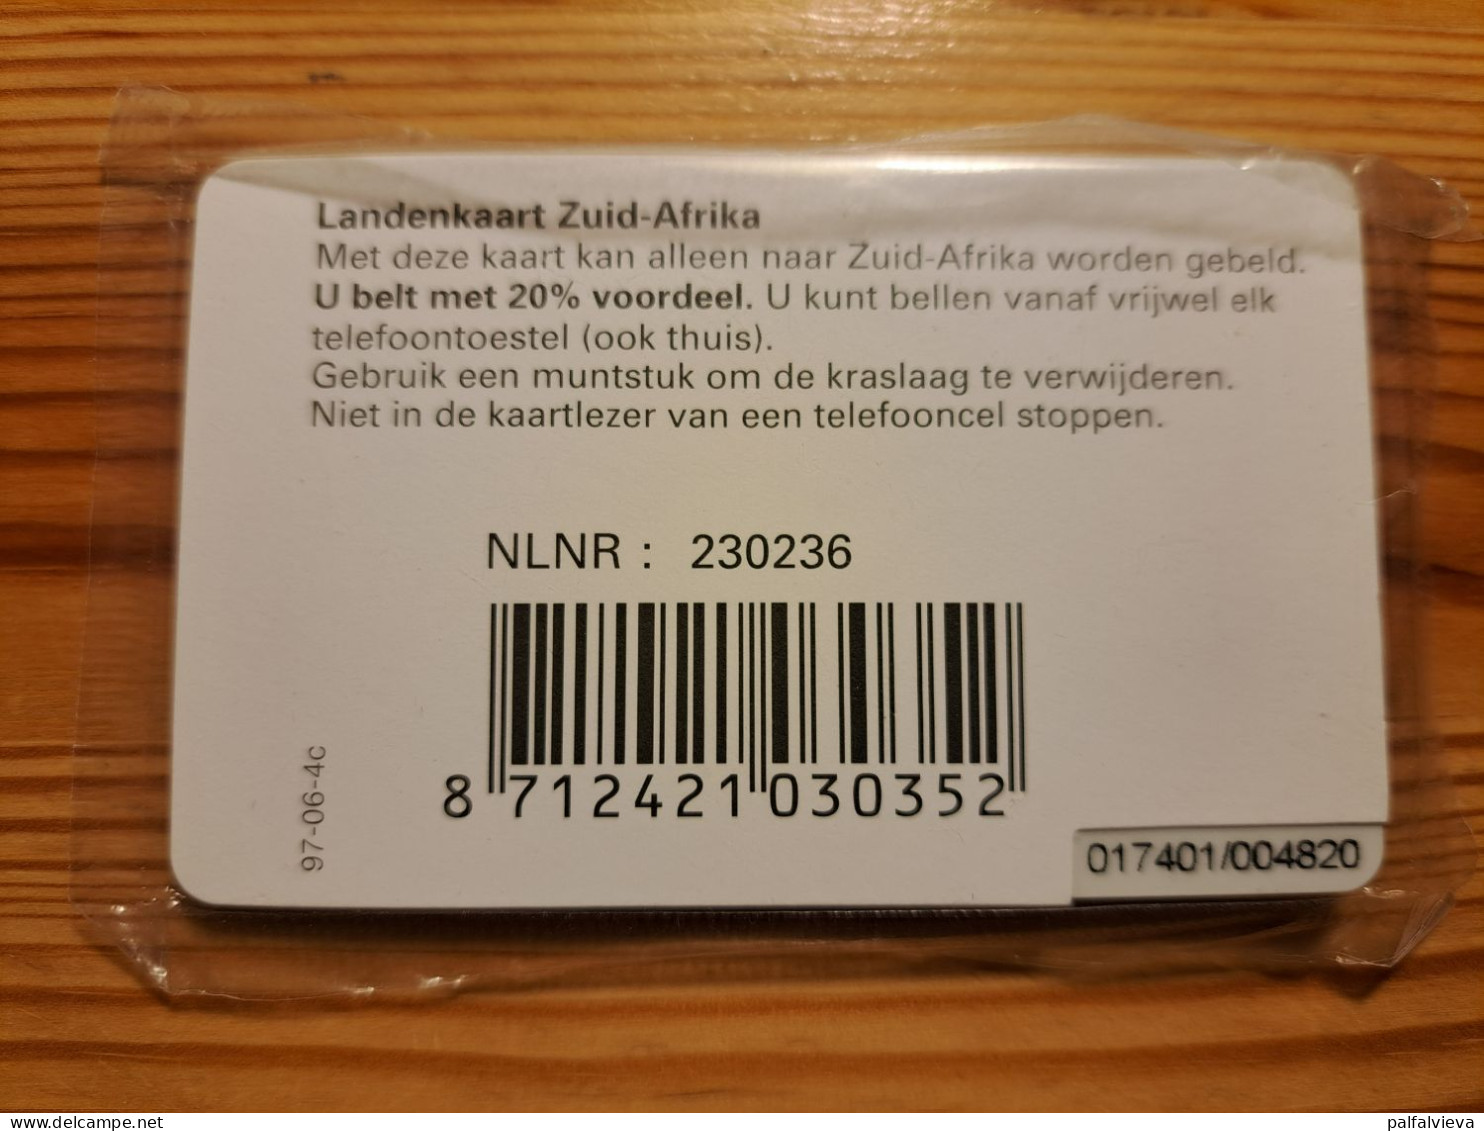 Prepaid Phonecard Netherlands, Kpn Telecom - Zuid-Afrikakaart, South Africa - Mint In Blister - [3] Sim Cards, Prepaid & Refills